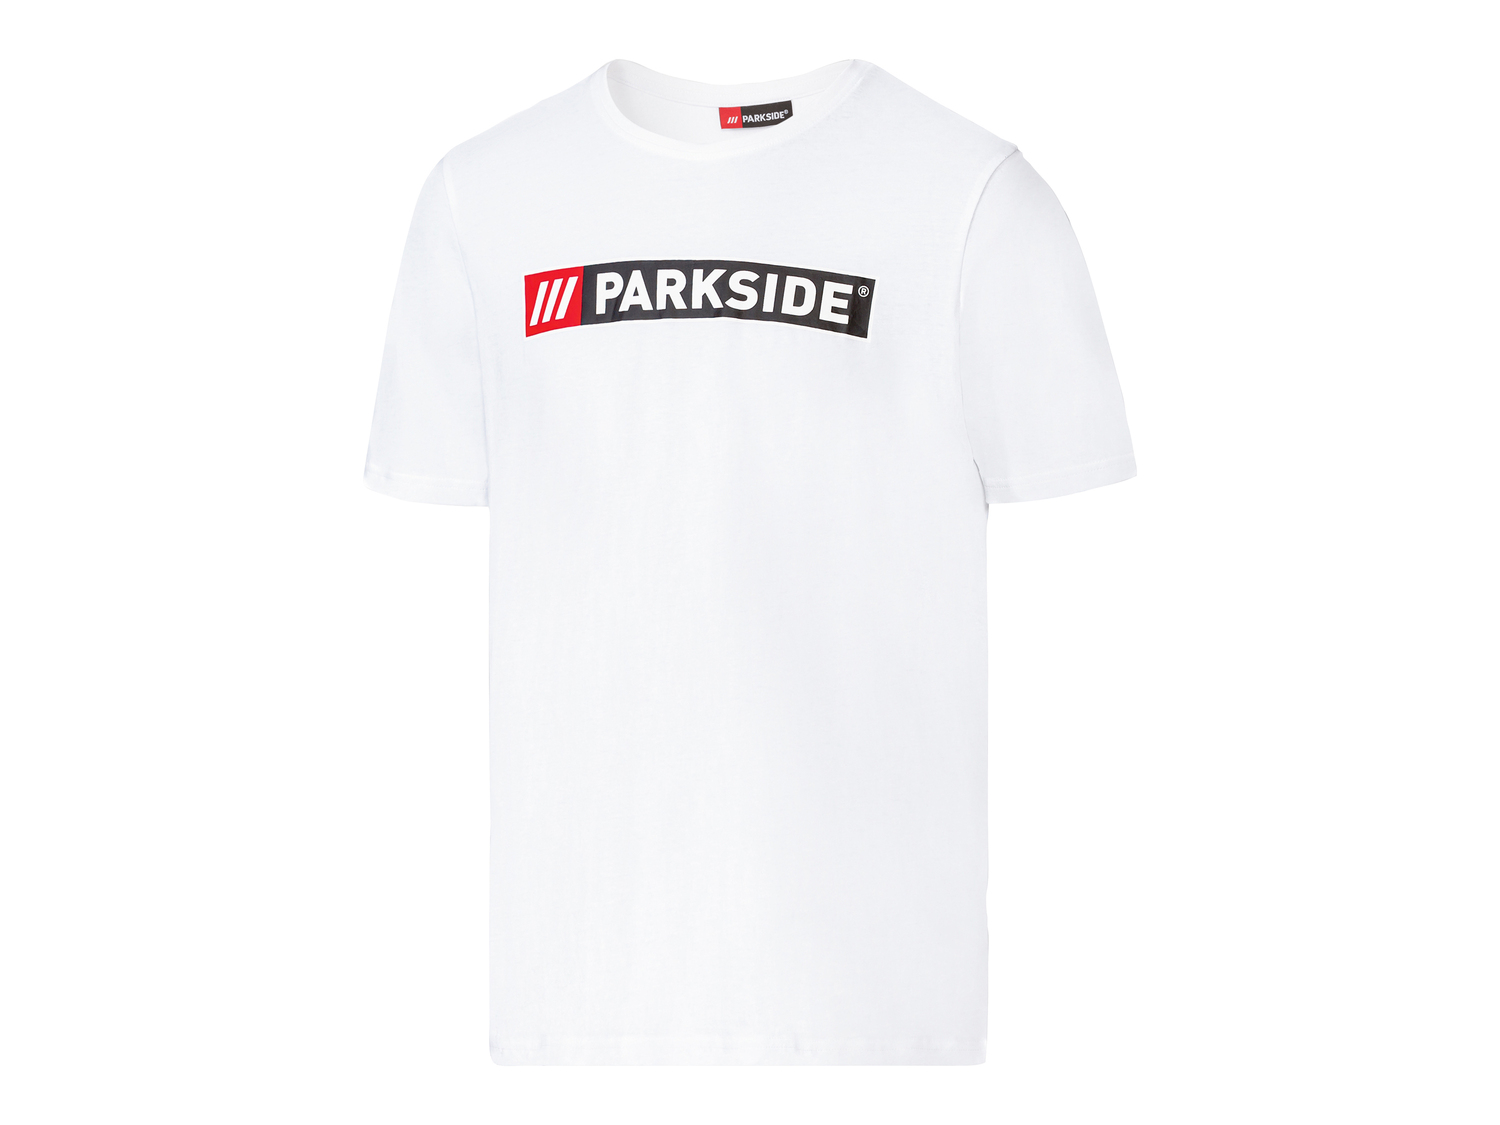 T-shirt da uomo Parkside, prezzo 4.99 &#8364; 
Misure: M-XXL 
- 
Puro cotone
Taglie ...